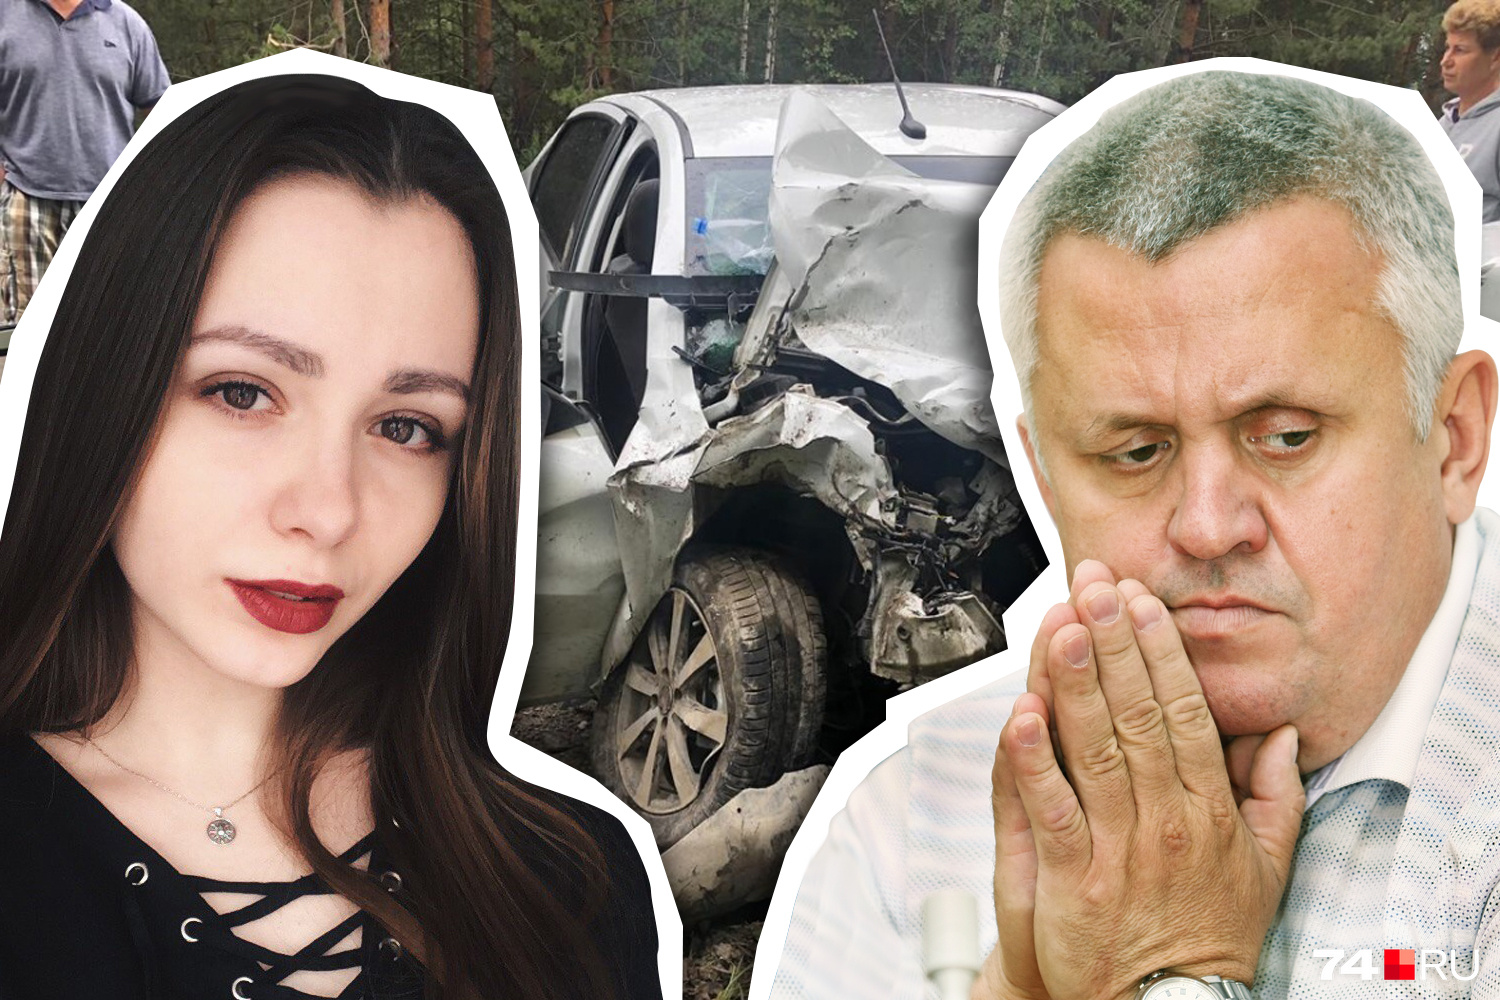 Настя Вяткина была в машине, в которую врезался внедорожник Андрея Косилова. После той аварии она впала в кому, а выйдя из нее, потеряла зрение и стала инвалидом